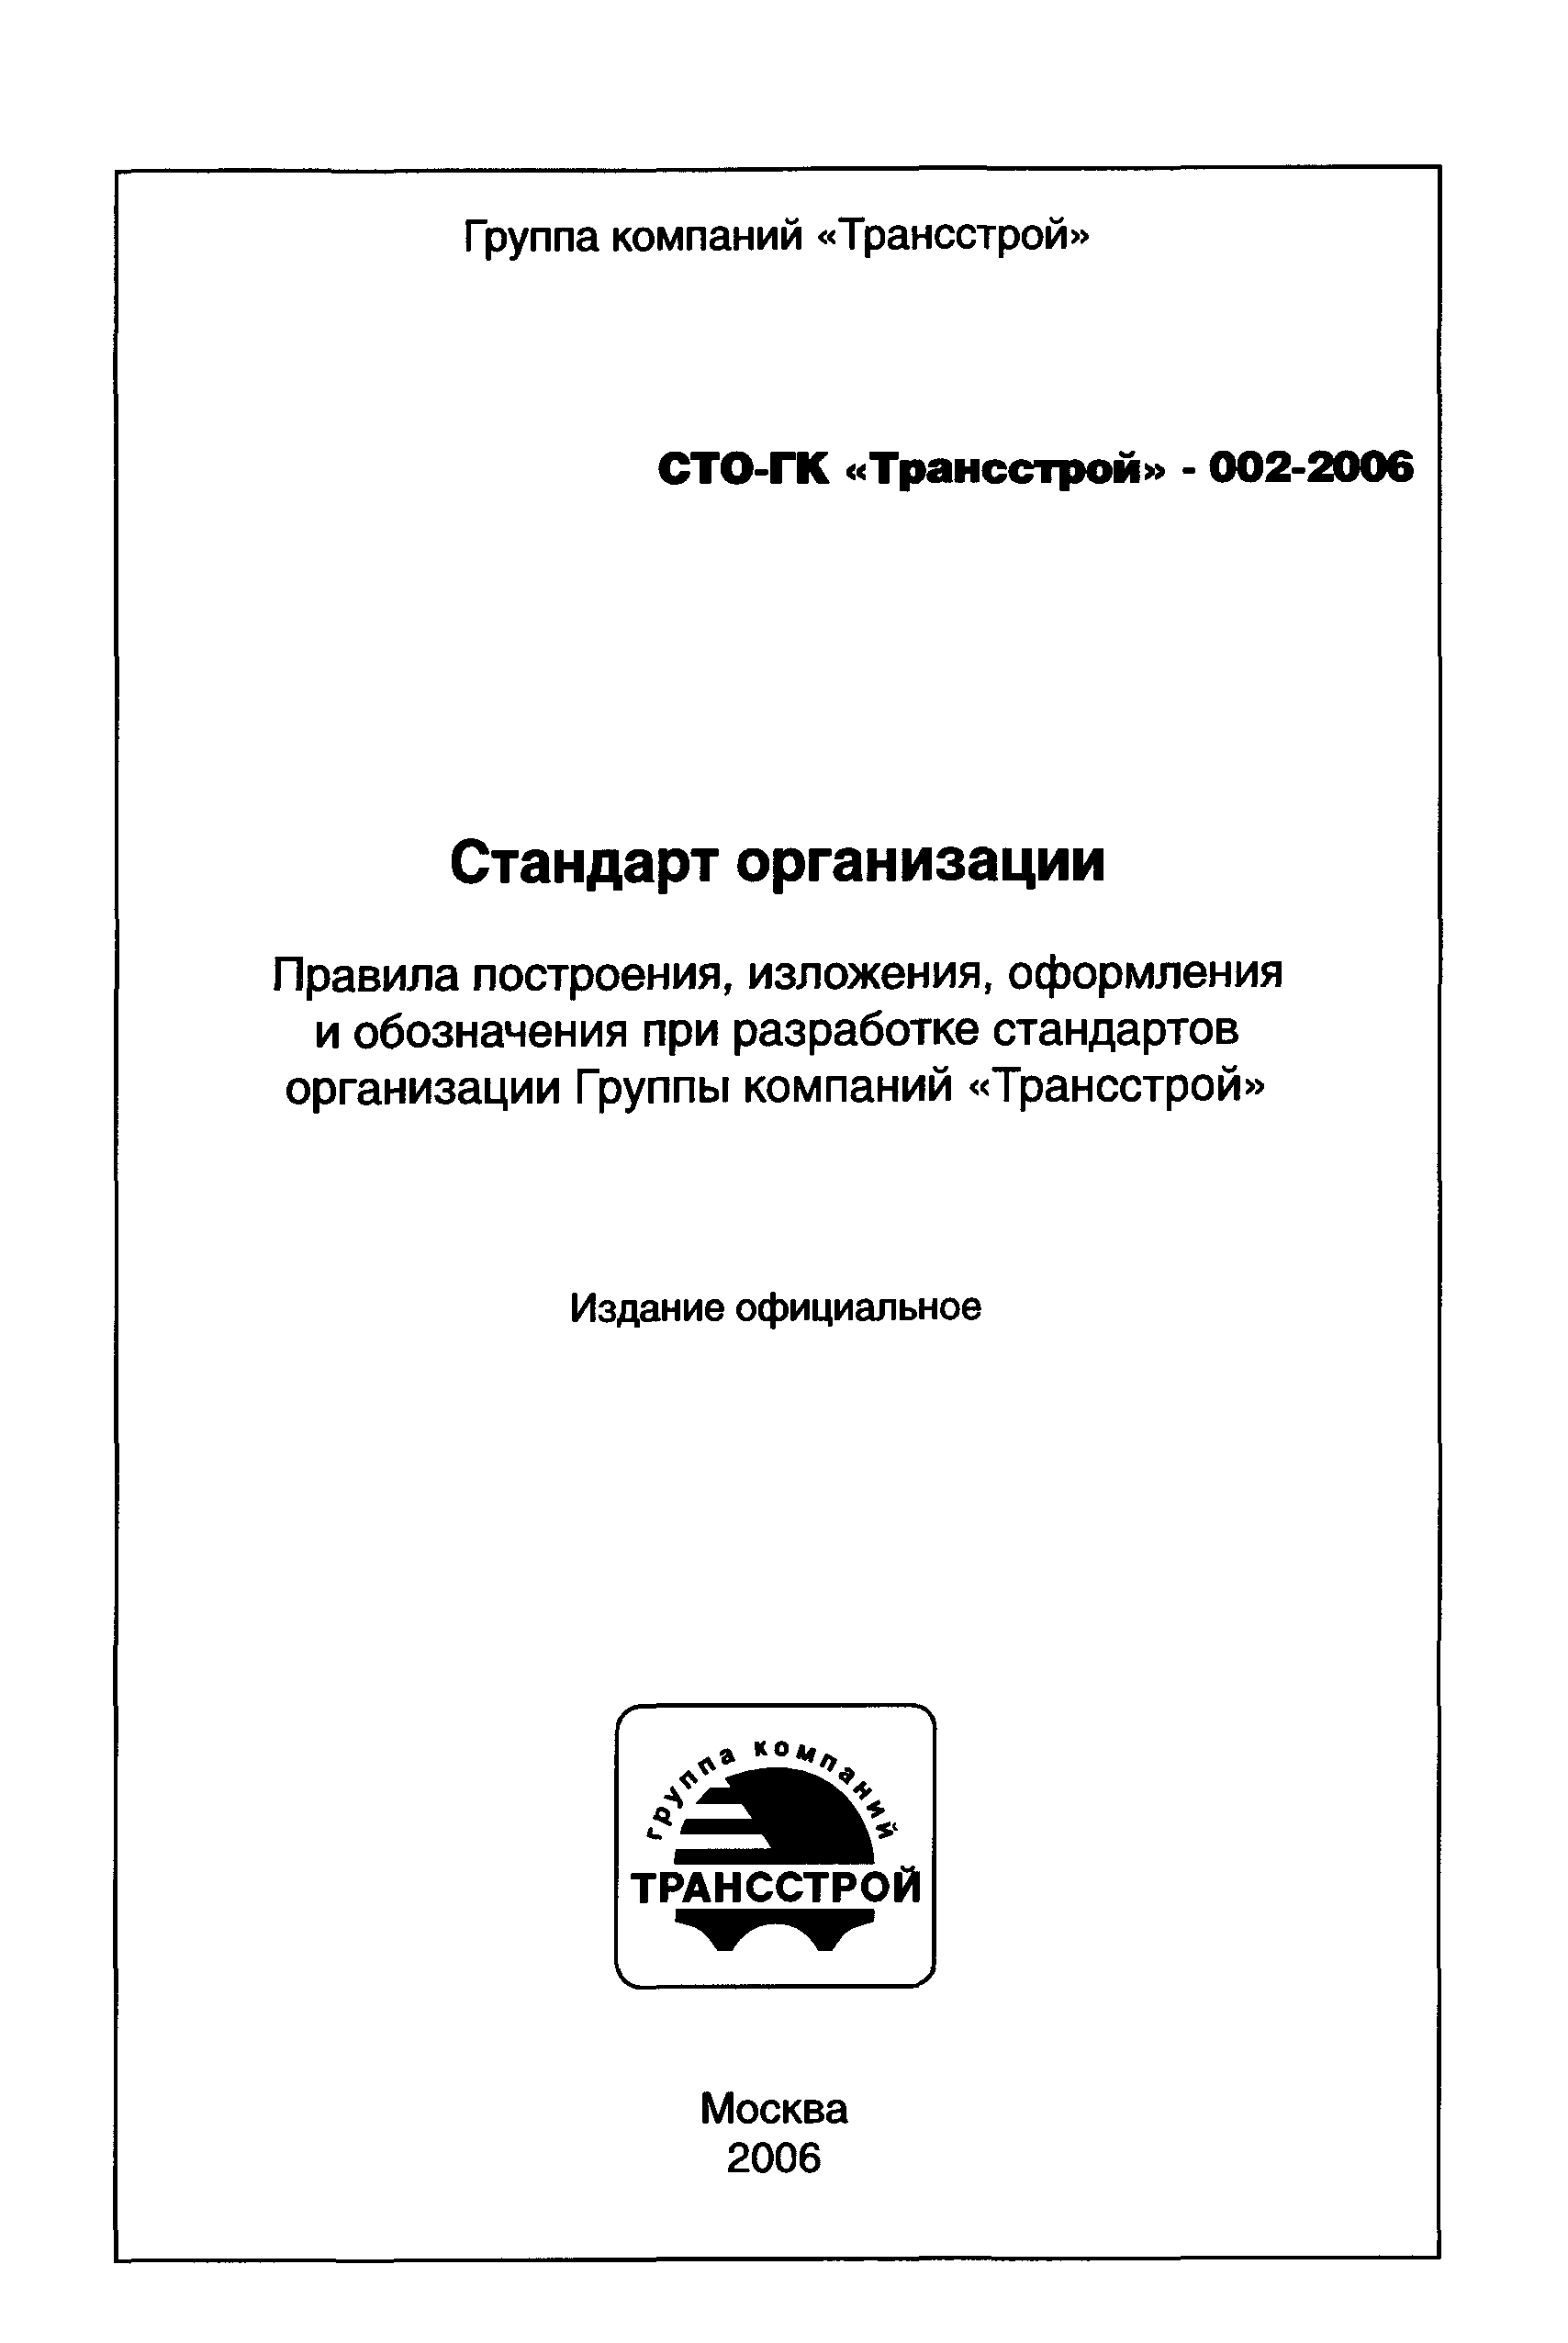 СТО-ГК "Трансстрой" 002-2006